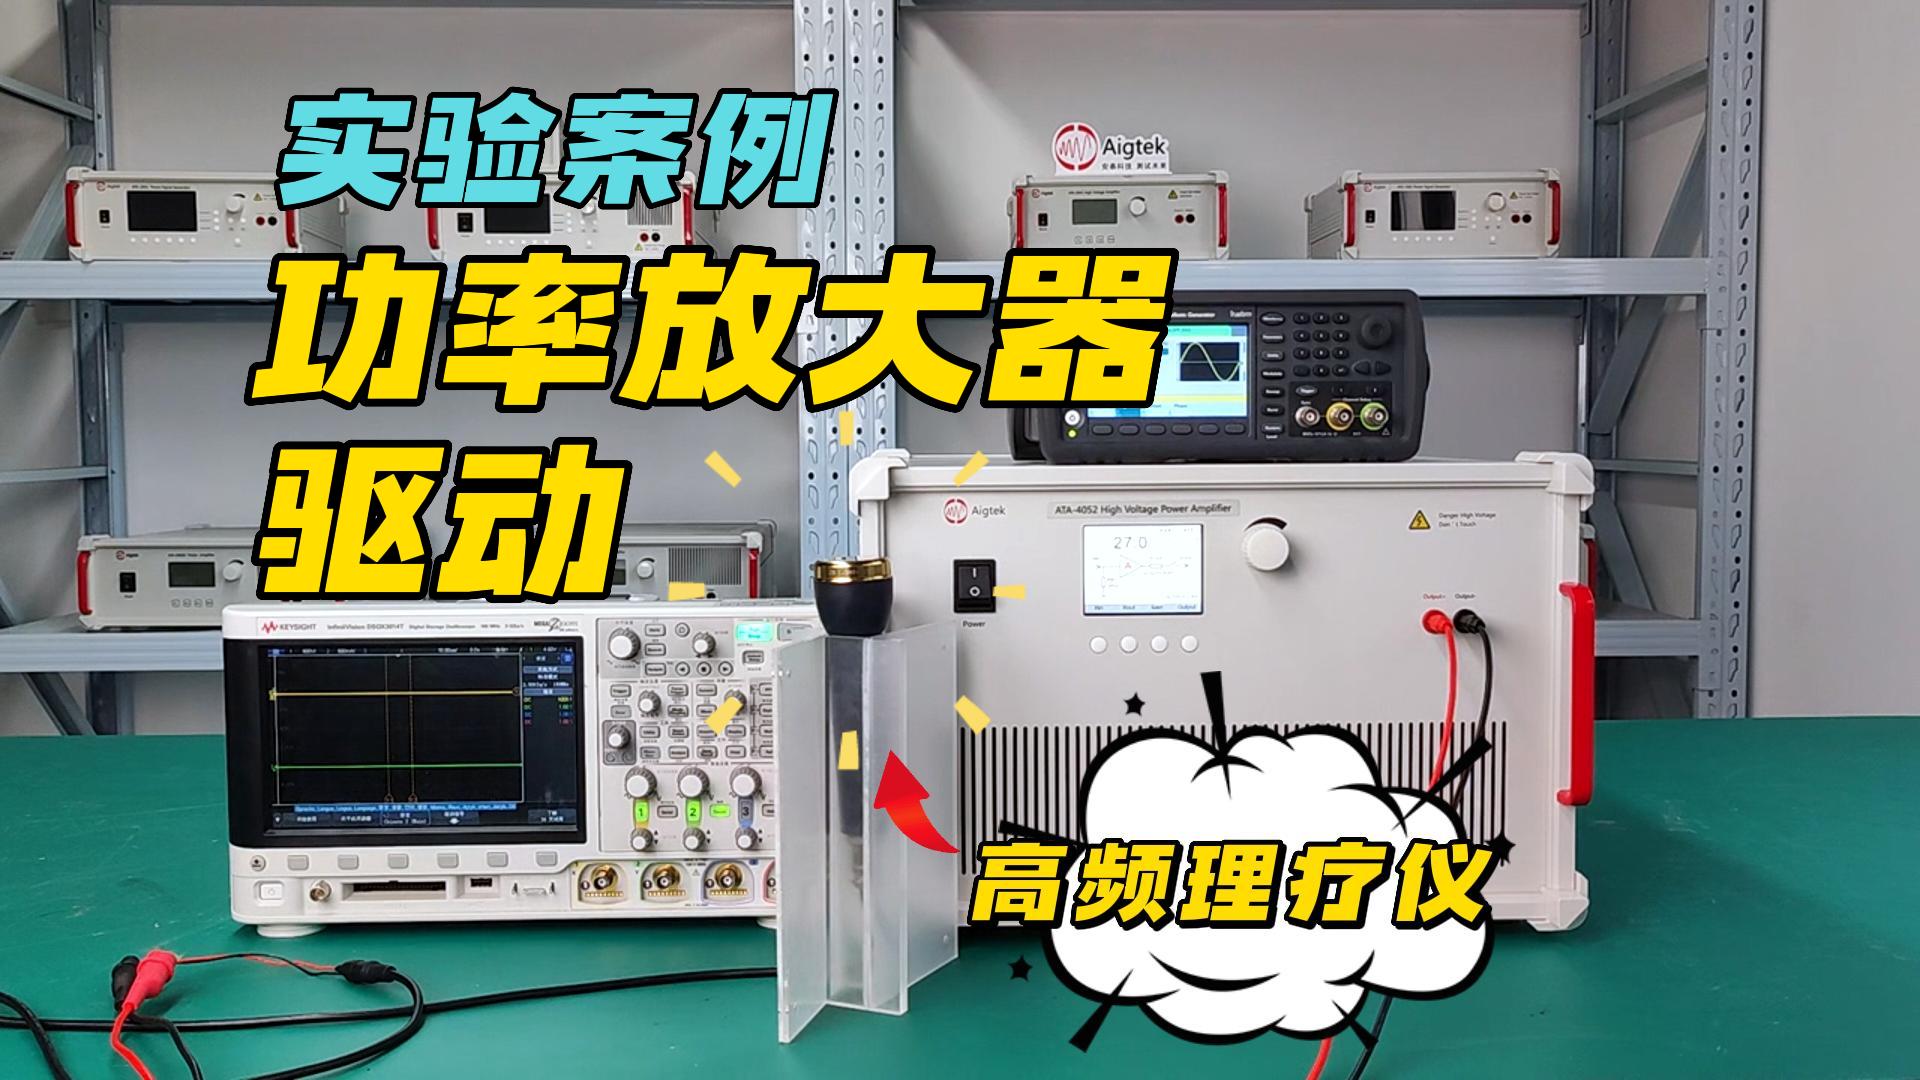 功率放大器经典实验案例——高频理疗仪驱动（ATA-4052）#功率放大器 #电路知识 